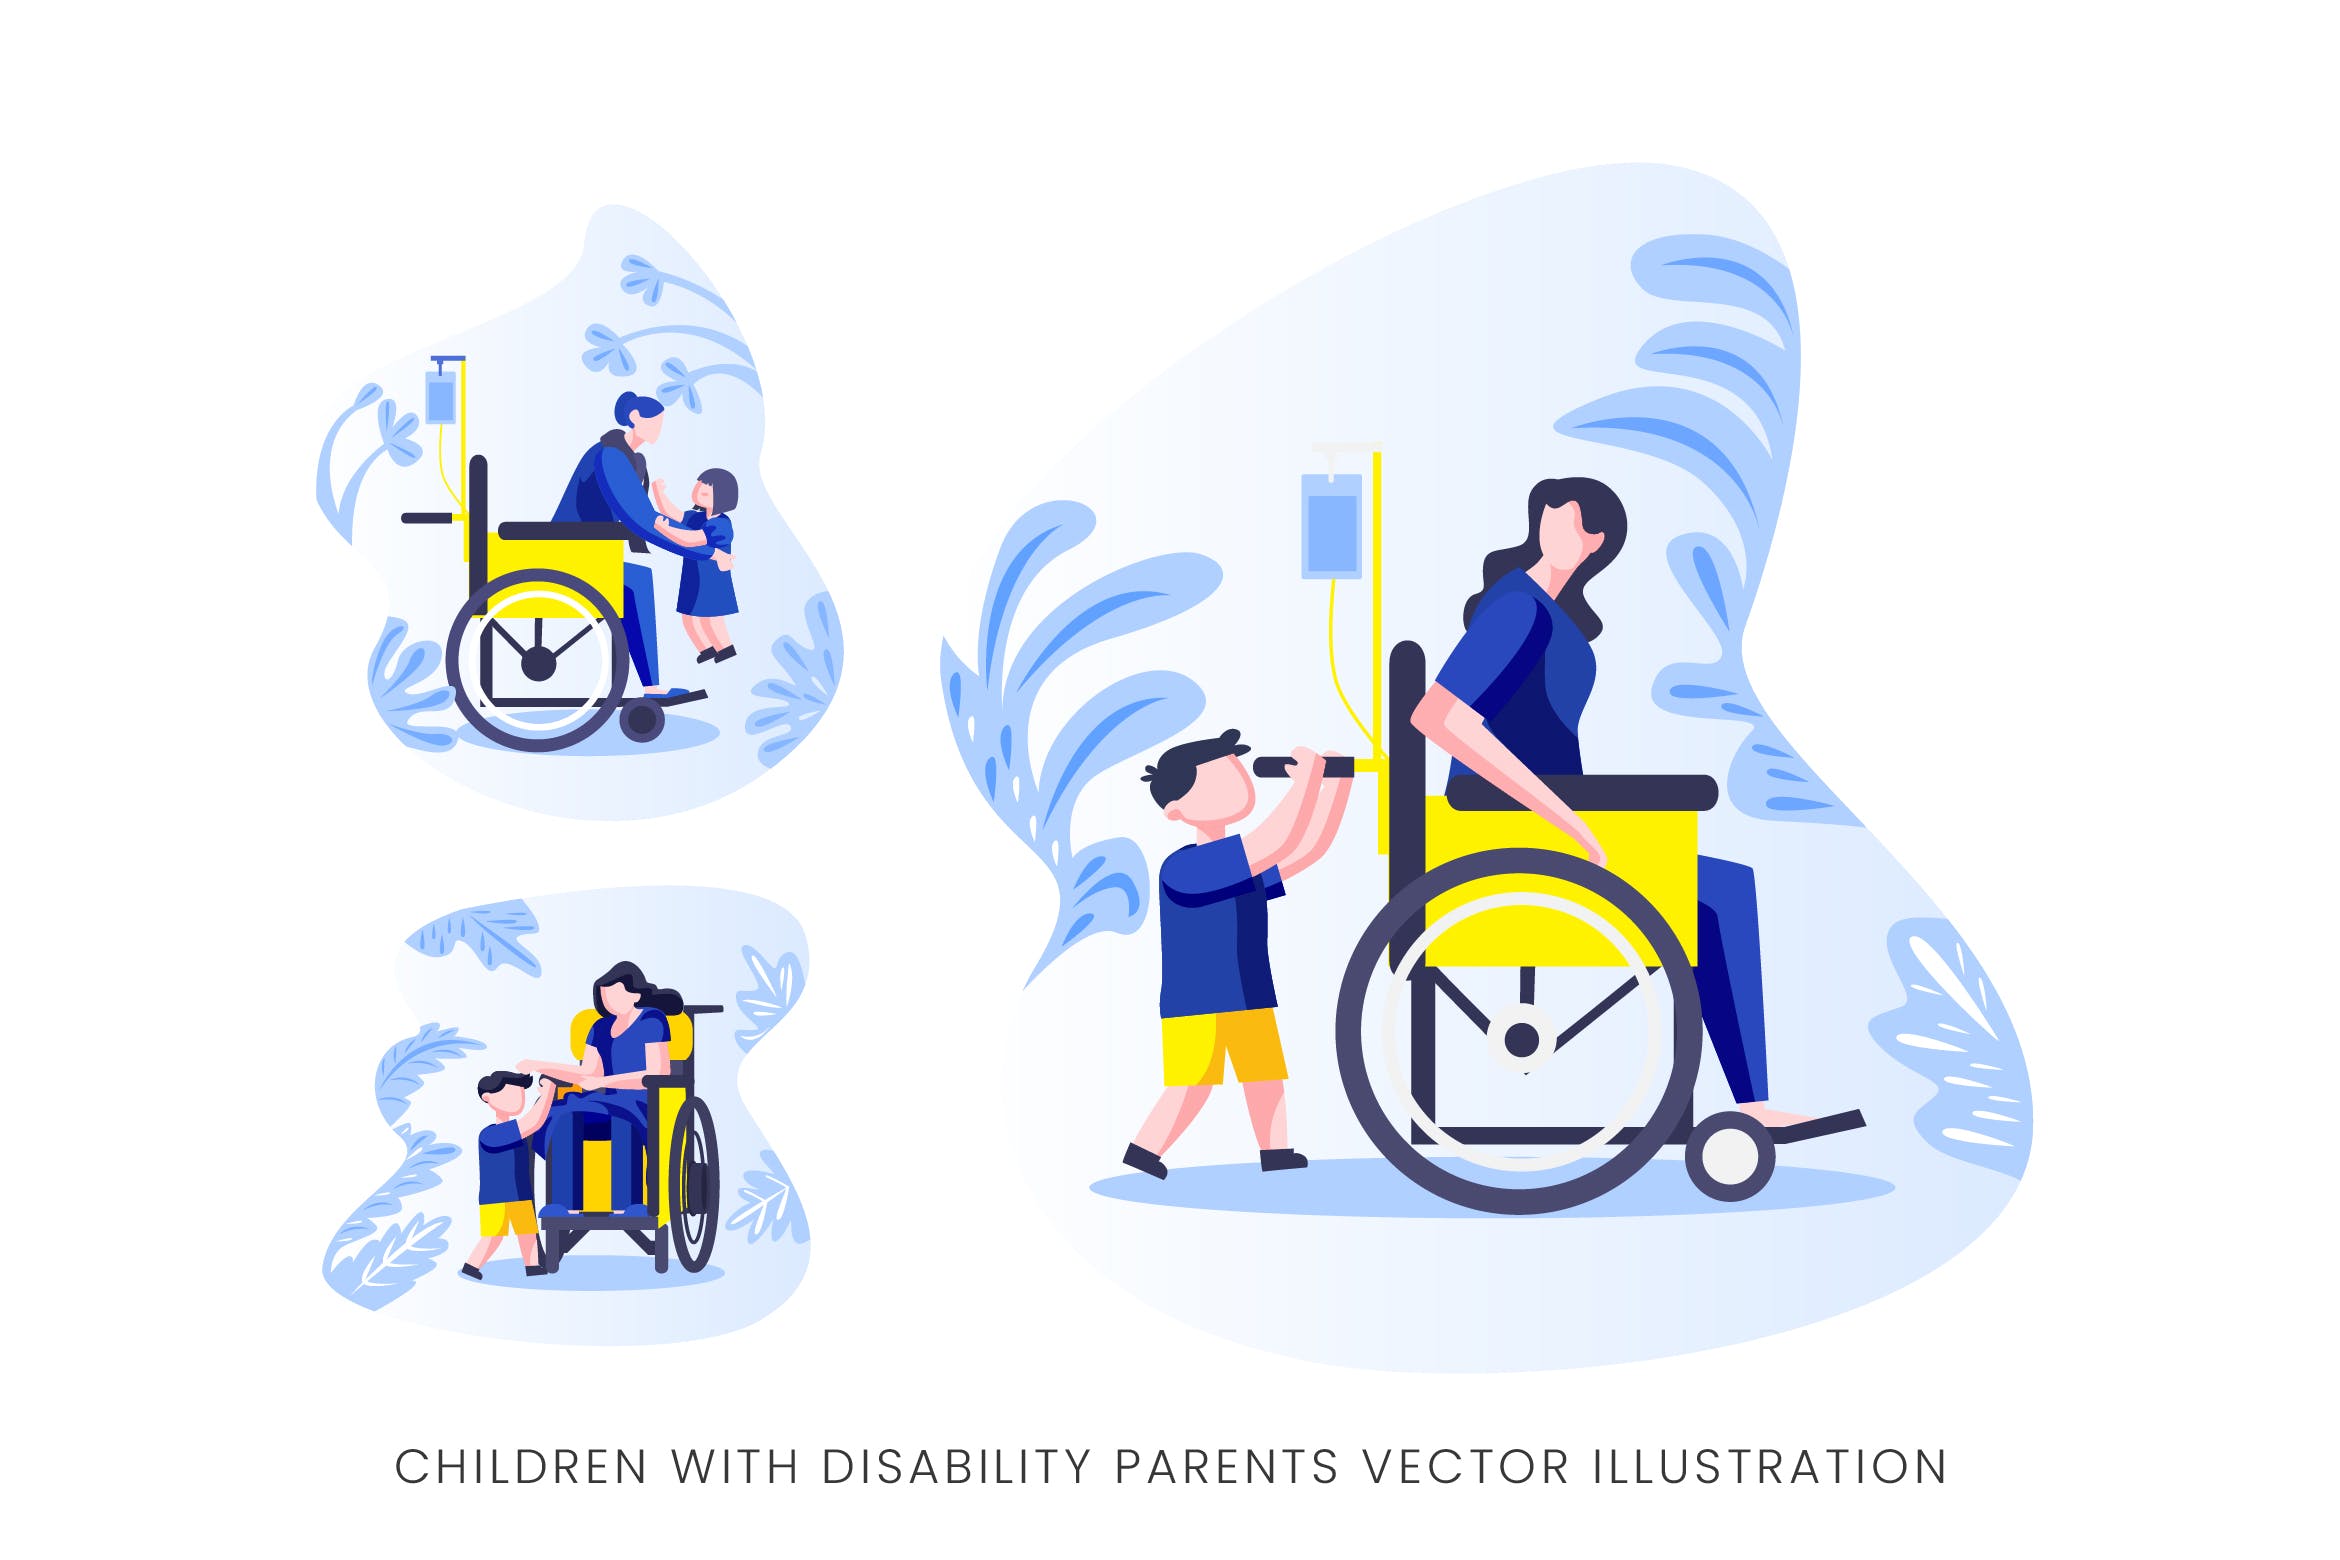 伤残人士与儿童人物形象非凡图库精选手绘插画矢量素材 Children With Disability Parents Vector Character插图